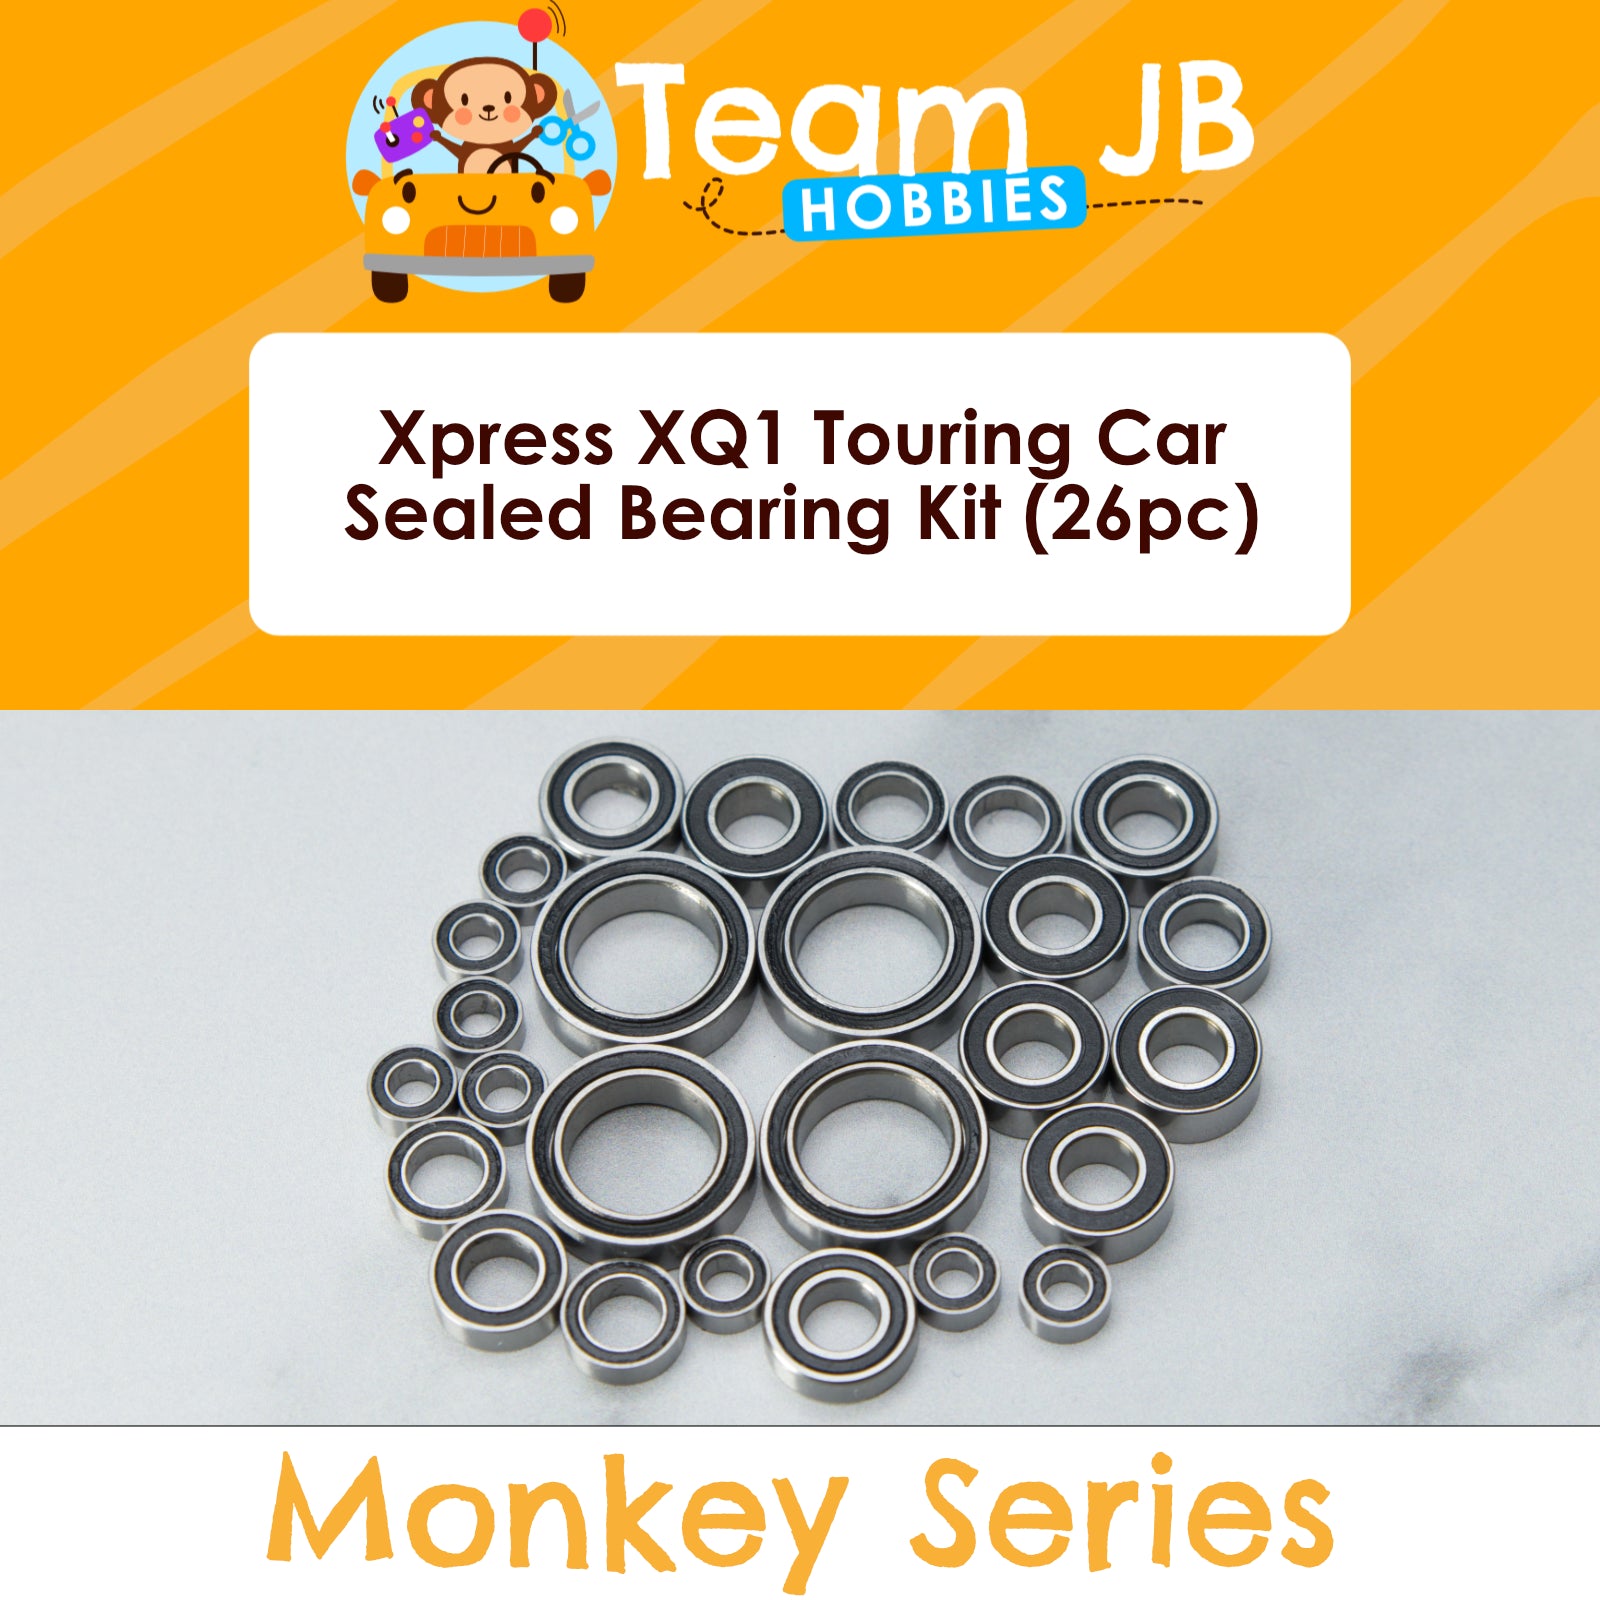 Xpress XQ1 Touring Car - Sealed Bearing Kit